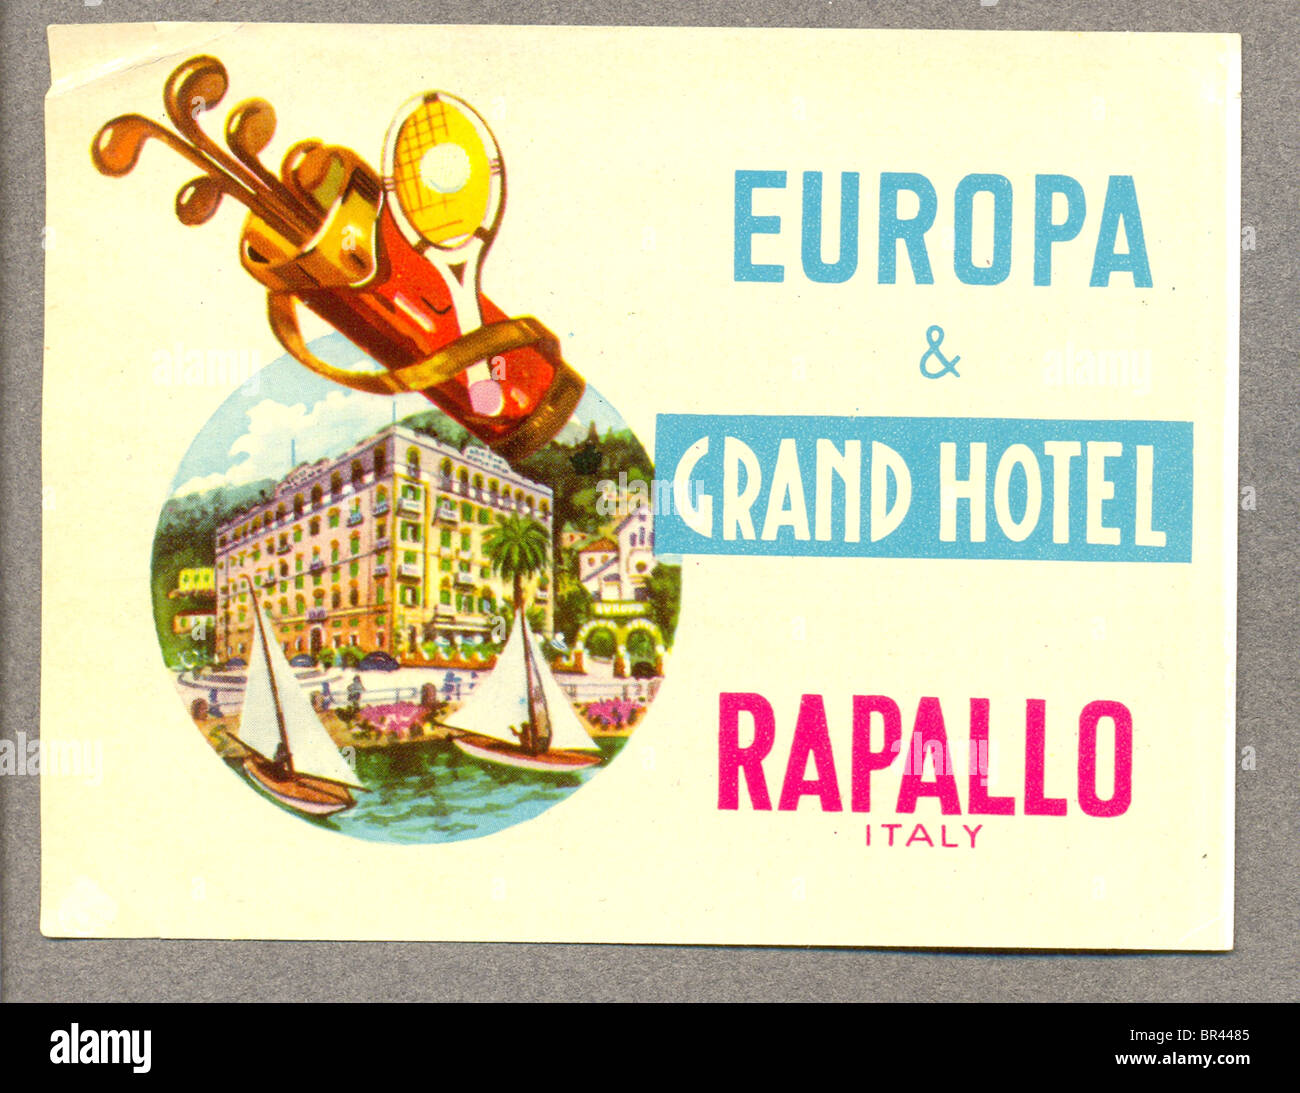 Etichetta bagaglio per Europa & Grand Hotel, Rapallo, Italia Foto Stock